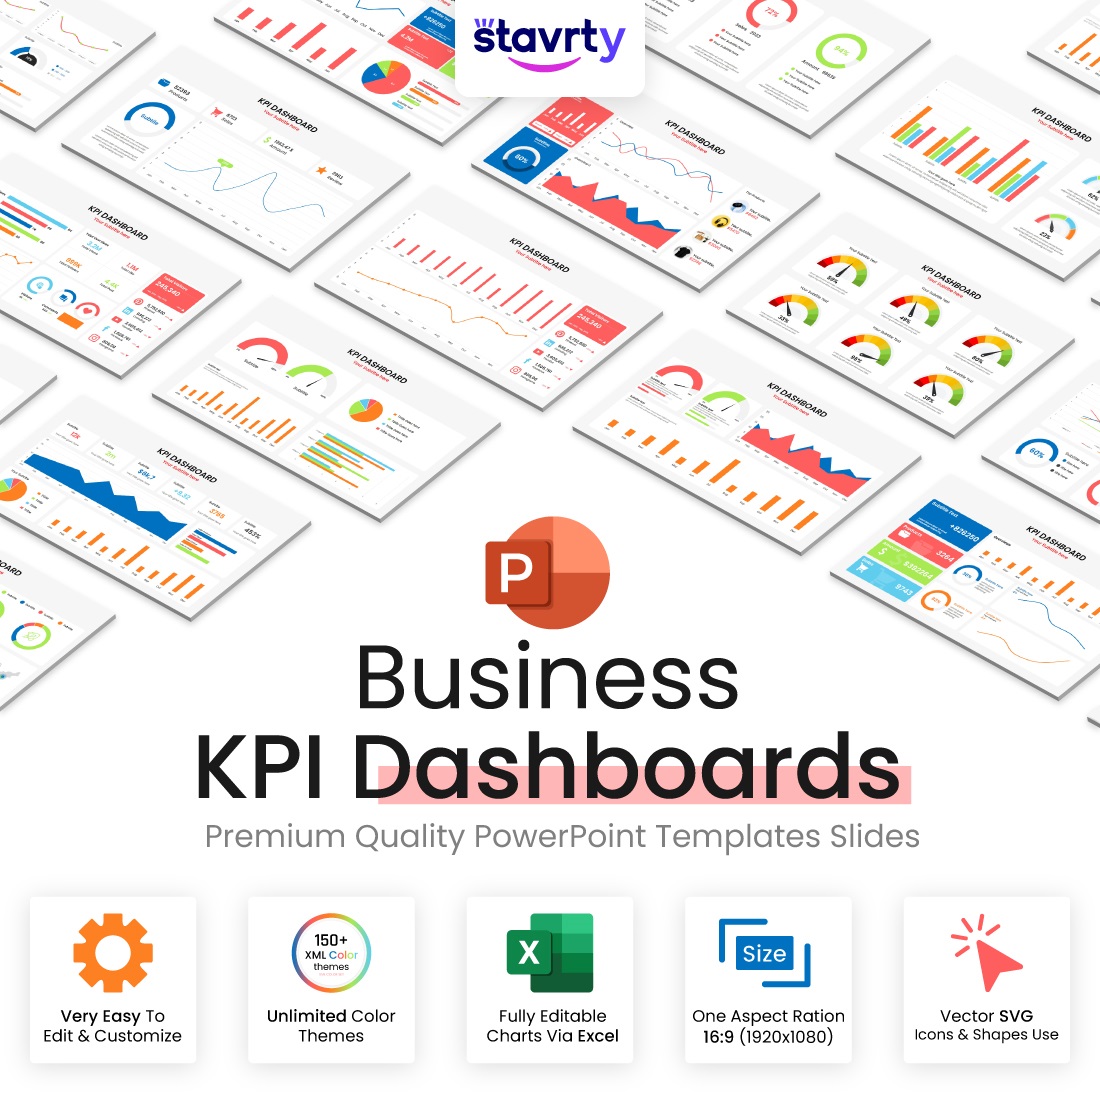 KPI Dashboard Presentation slides preview image.